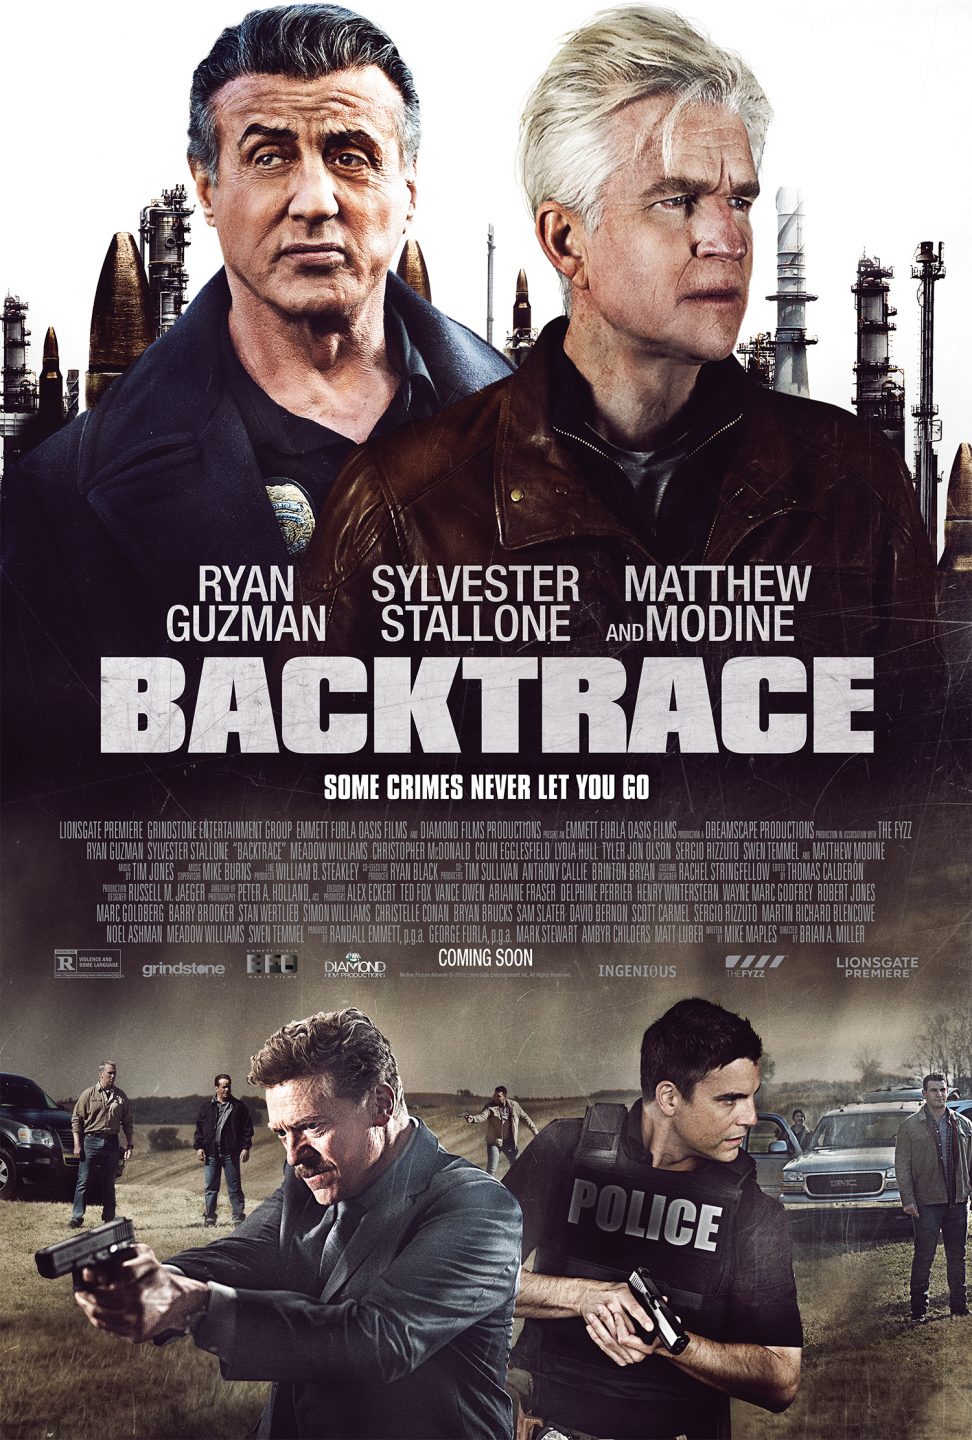 Backtrace poster (Lionsgate Premiere)